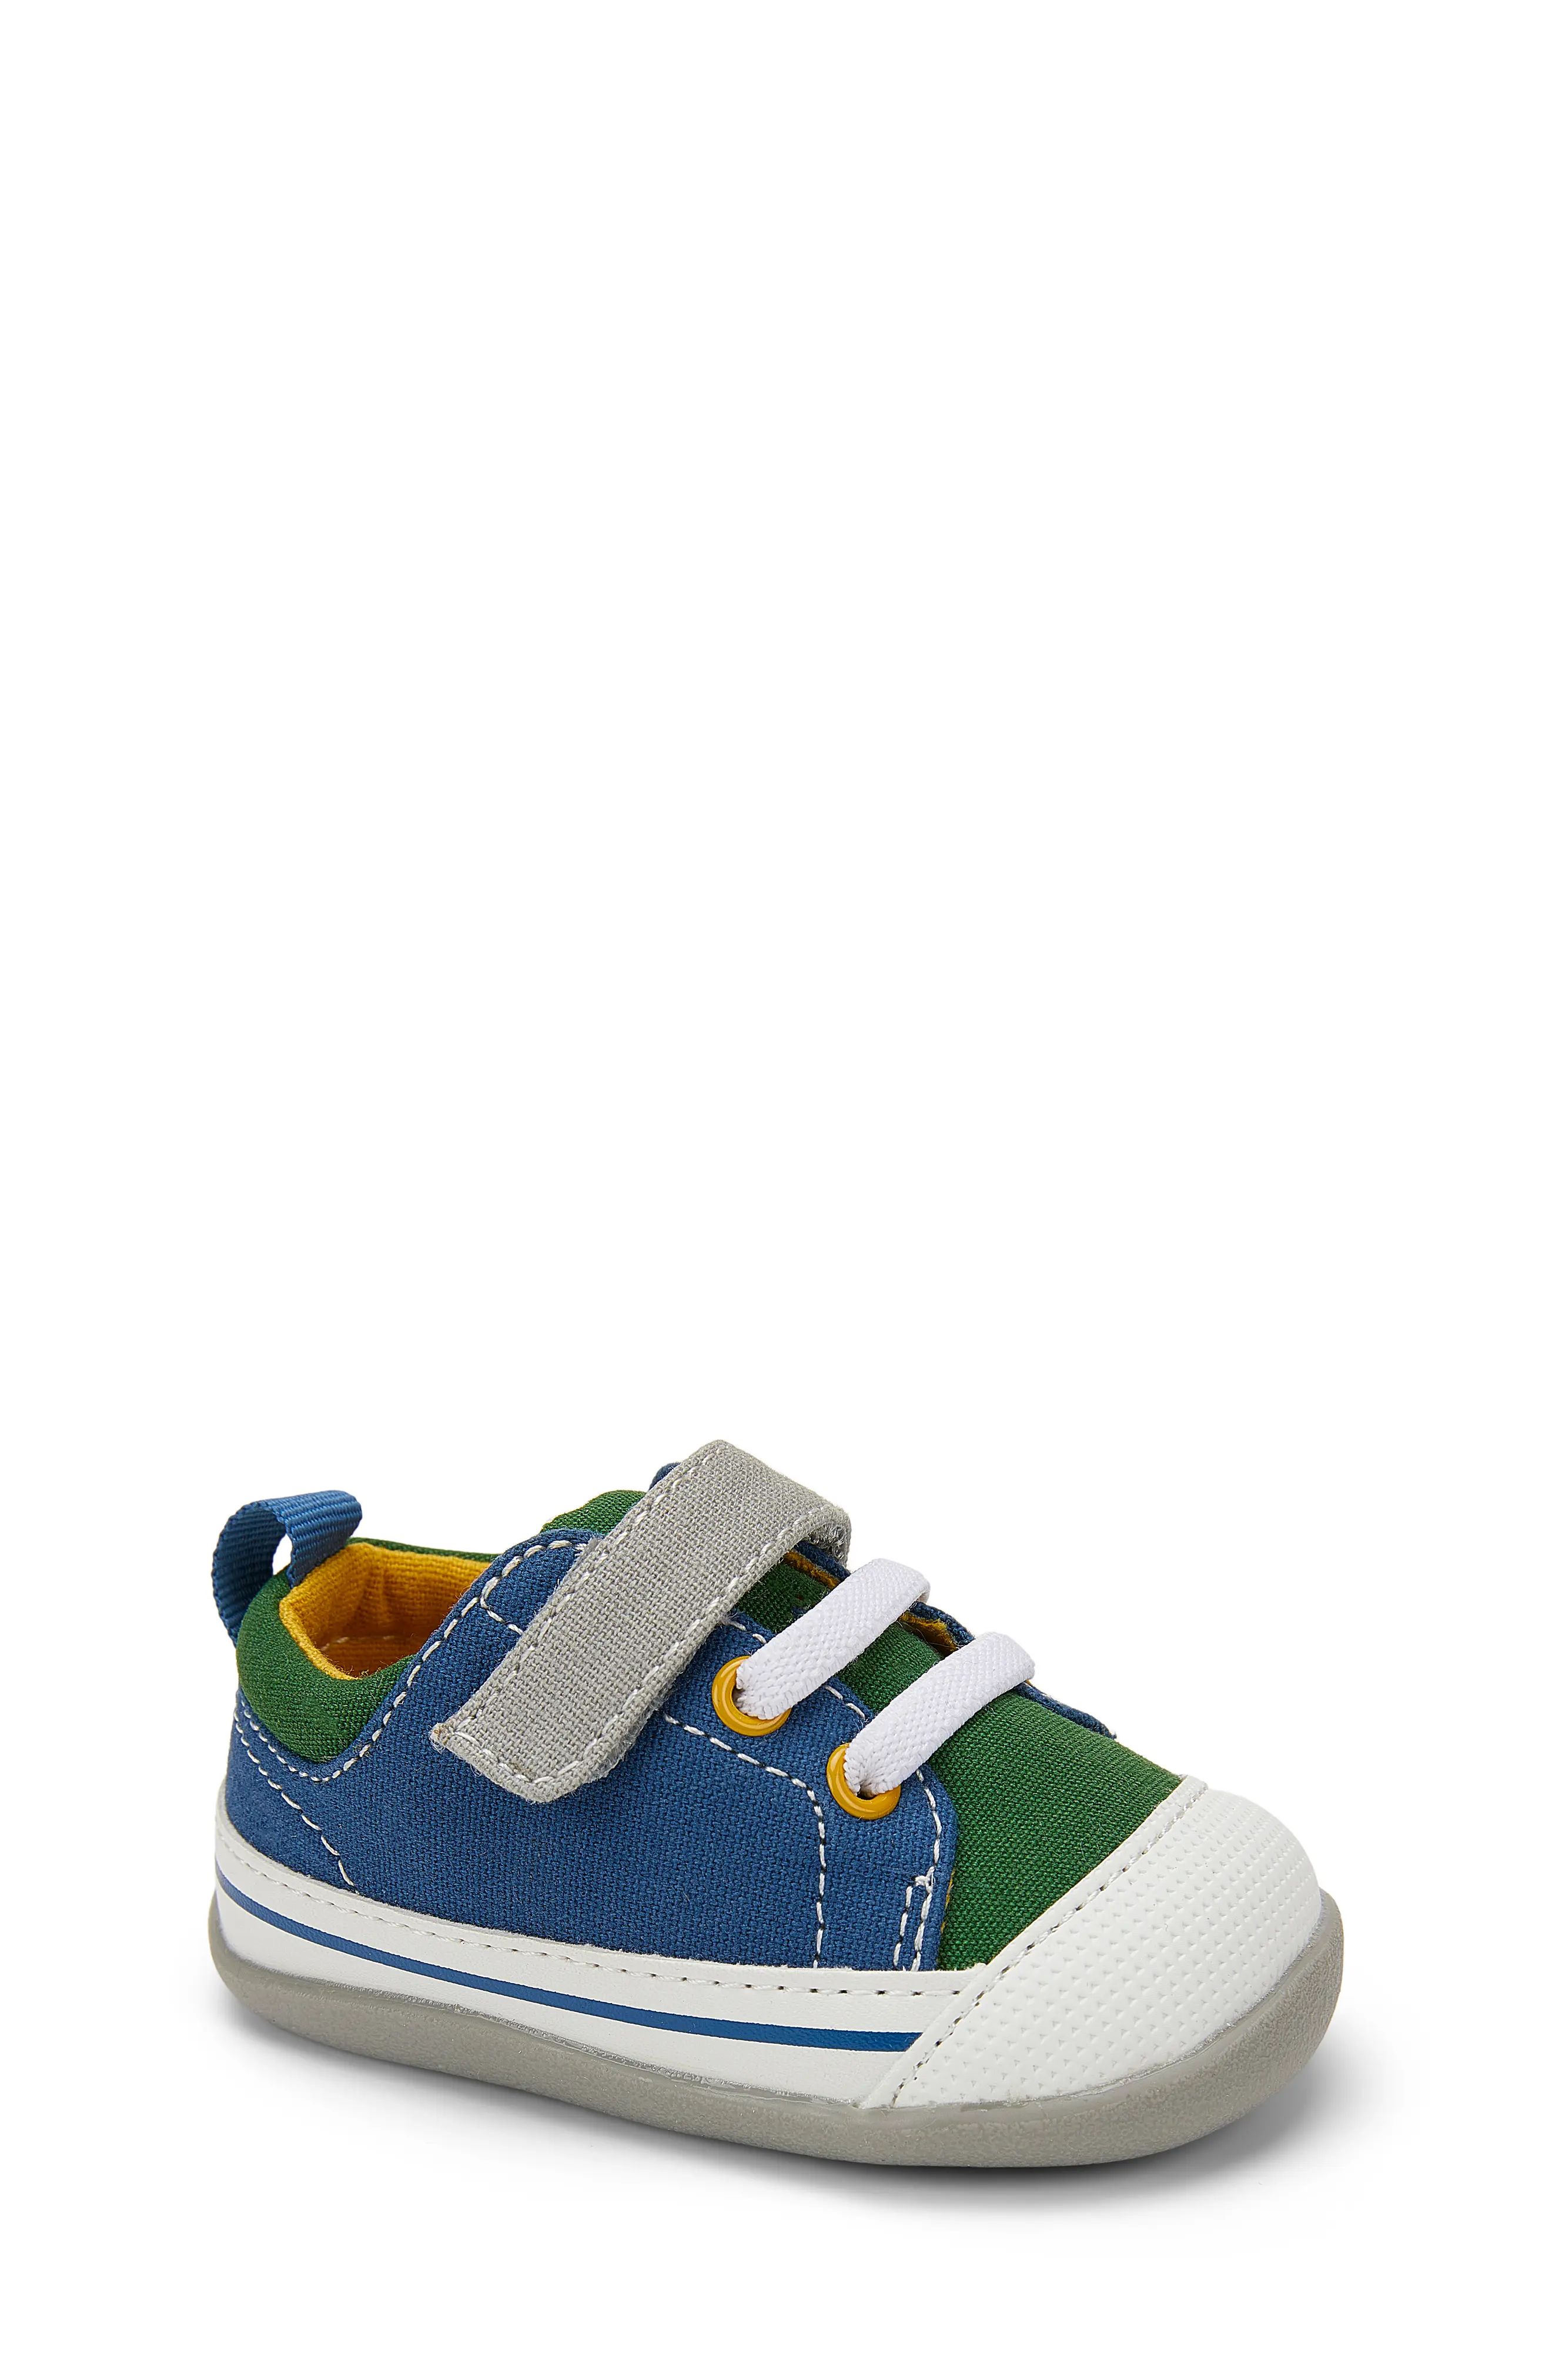 Infant See Kai Run Stevie Sneaker, Size 3 M - Blue/green | Nordstrom